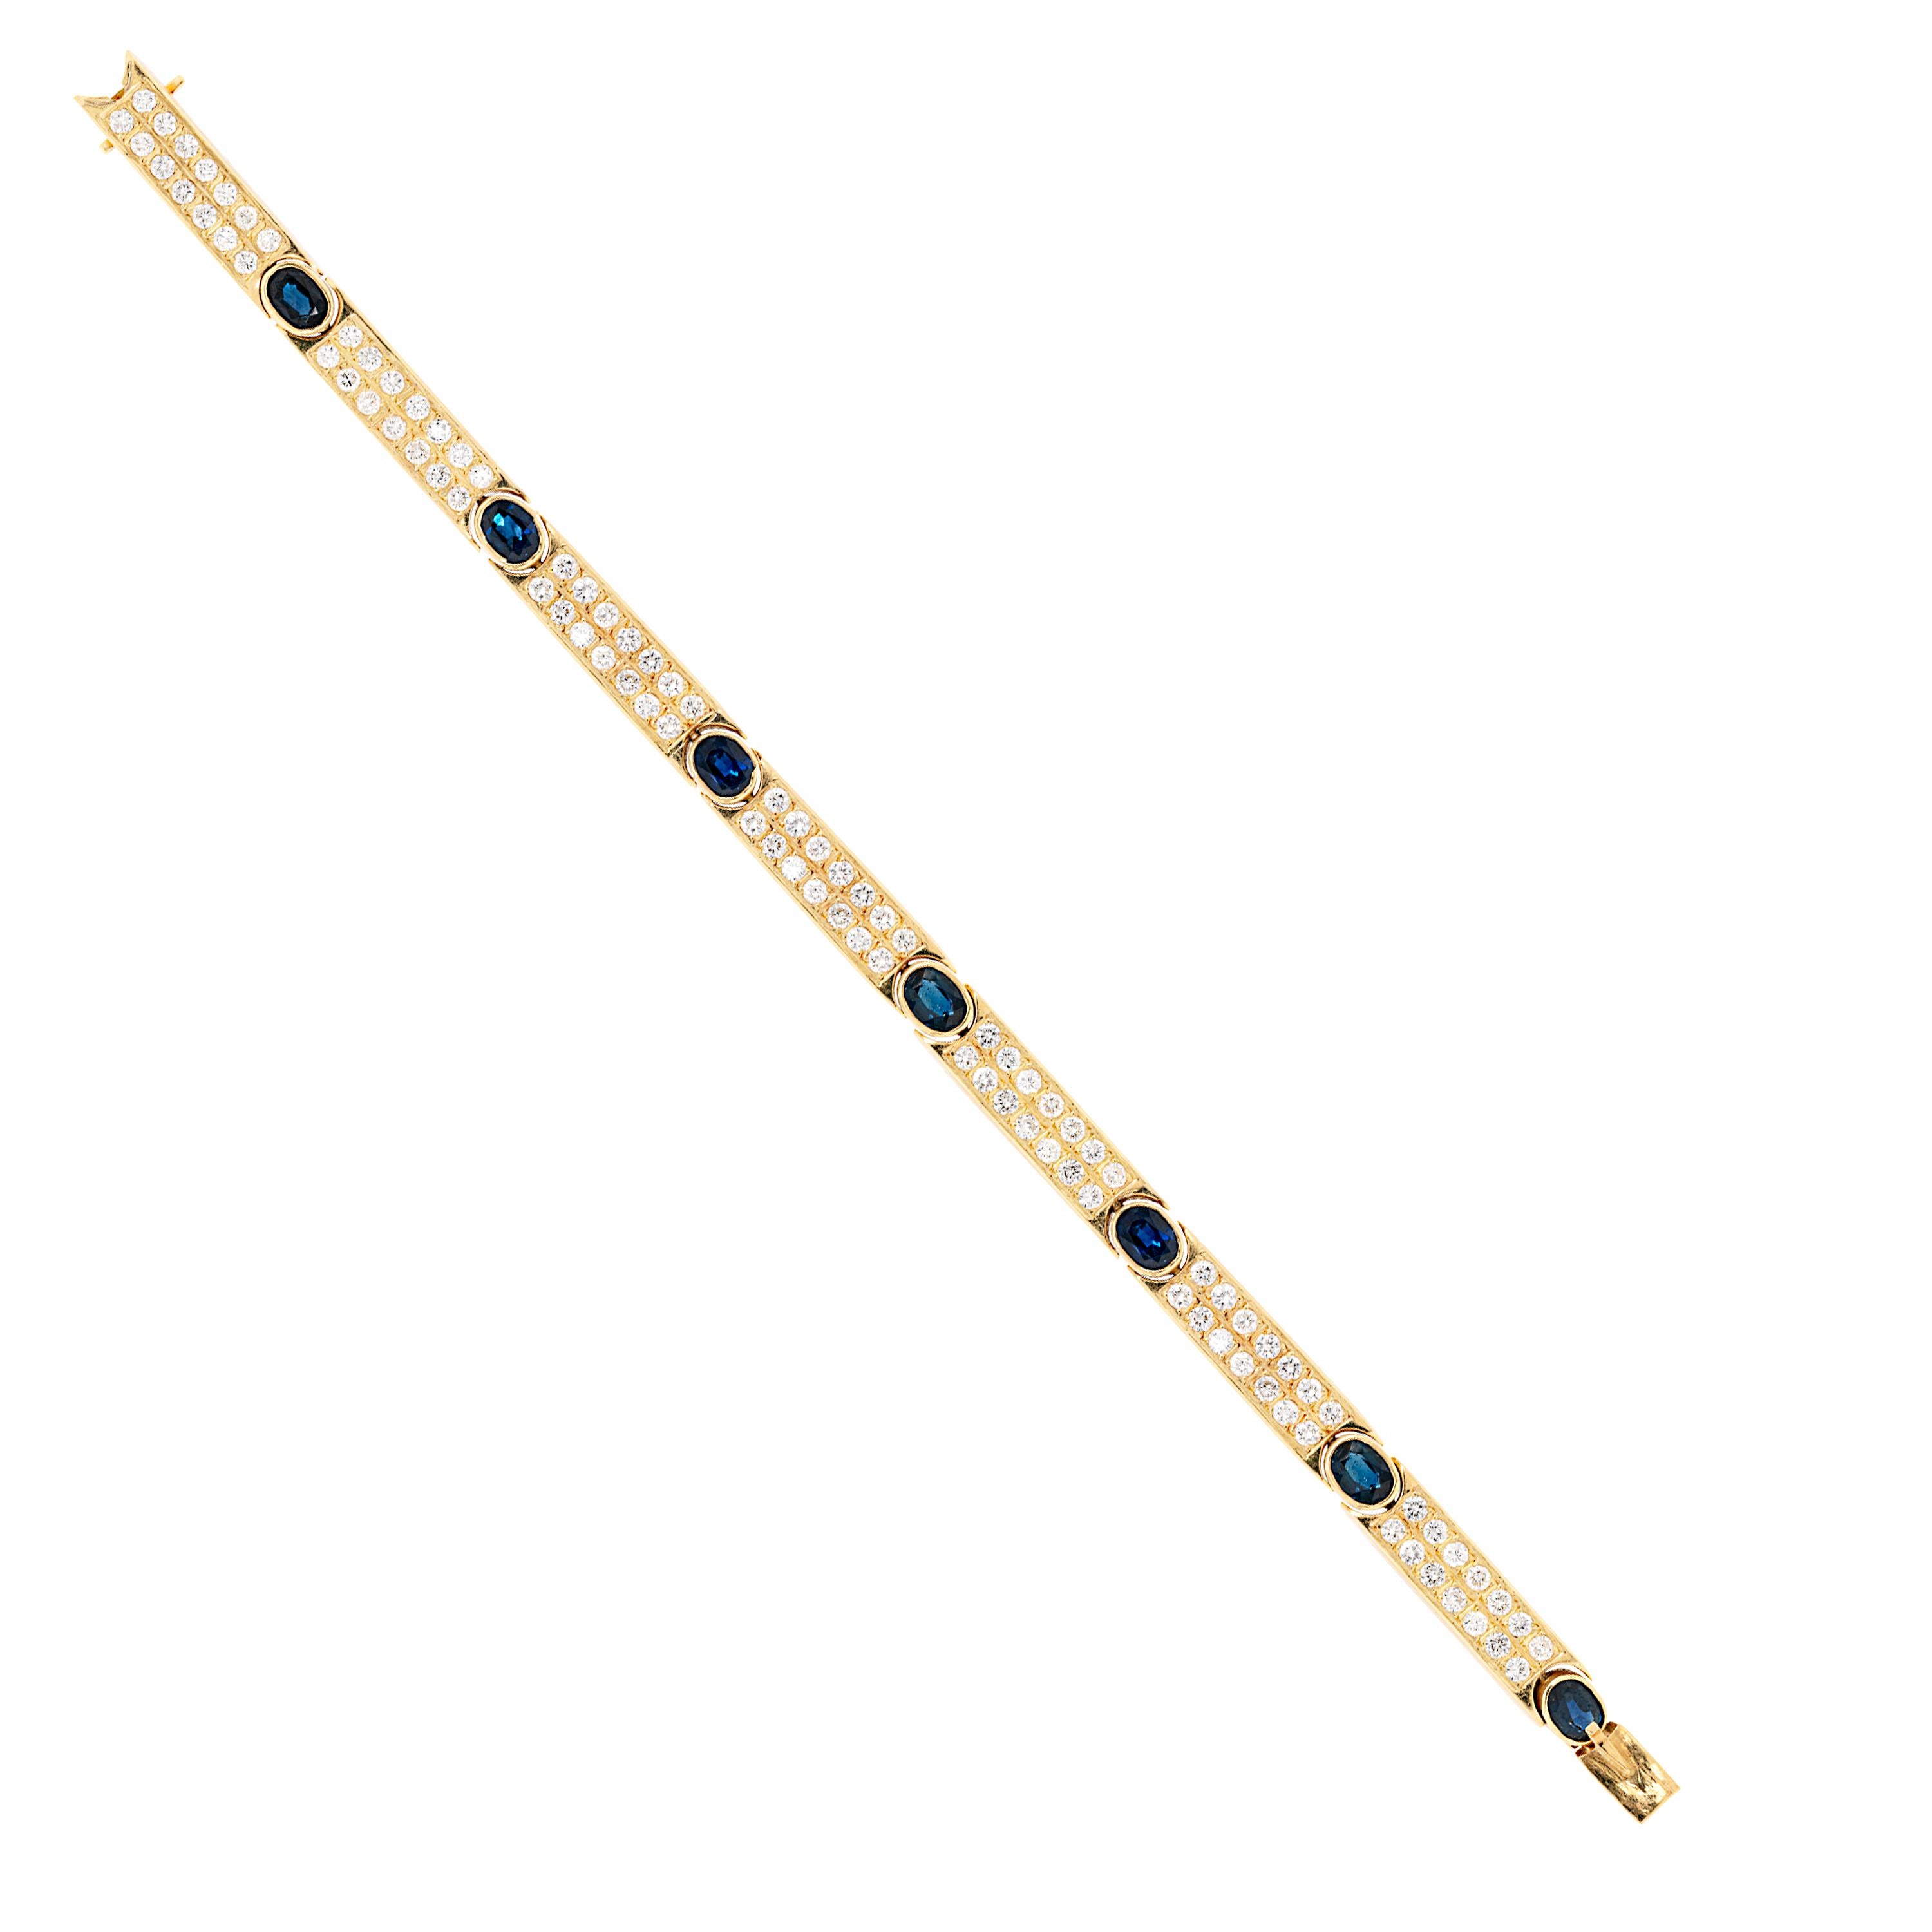 Bracelet Vintage composé de sept barres d'or serties de diamants, chacune reliée à sept saphirs bleus de forme ovale d'un poids total approximatif de 5,00ct+, tous montés dans des montures rubis ouvertes. Le bracelet présente un total de 98 diamants